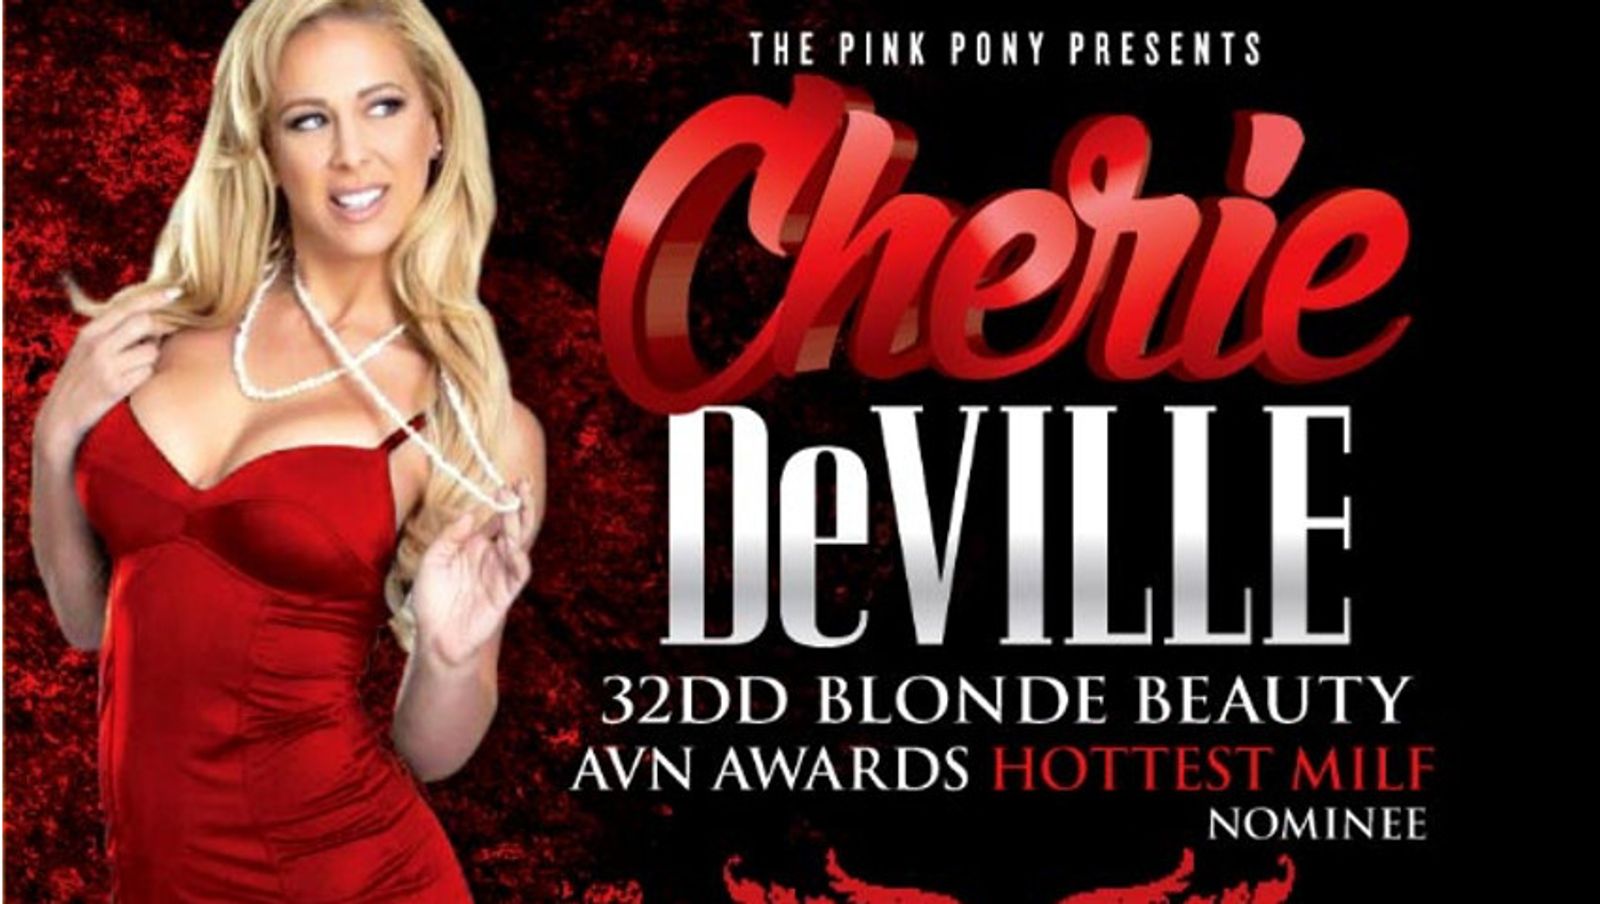 Cherie DeVille Dancing at Pink Pony in Atlanta